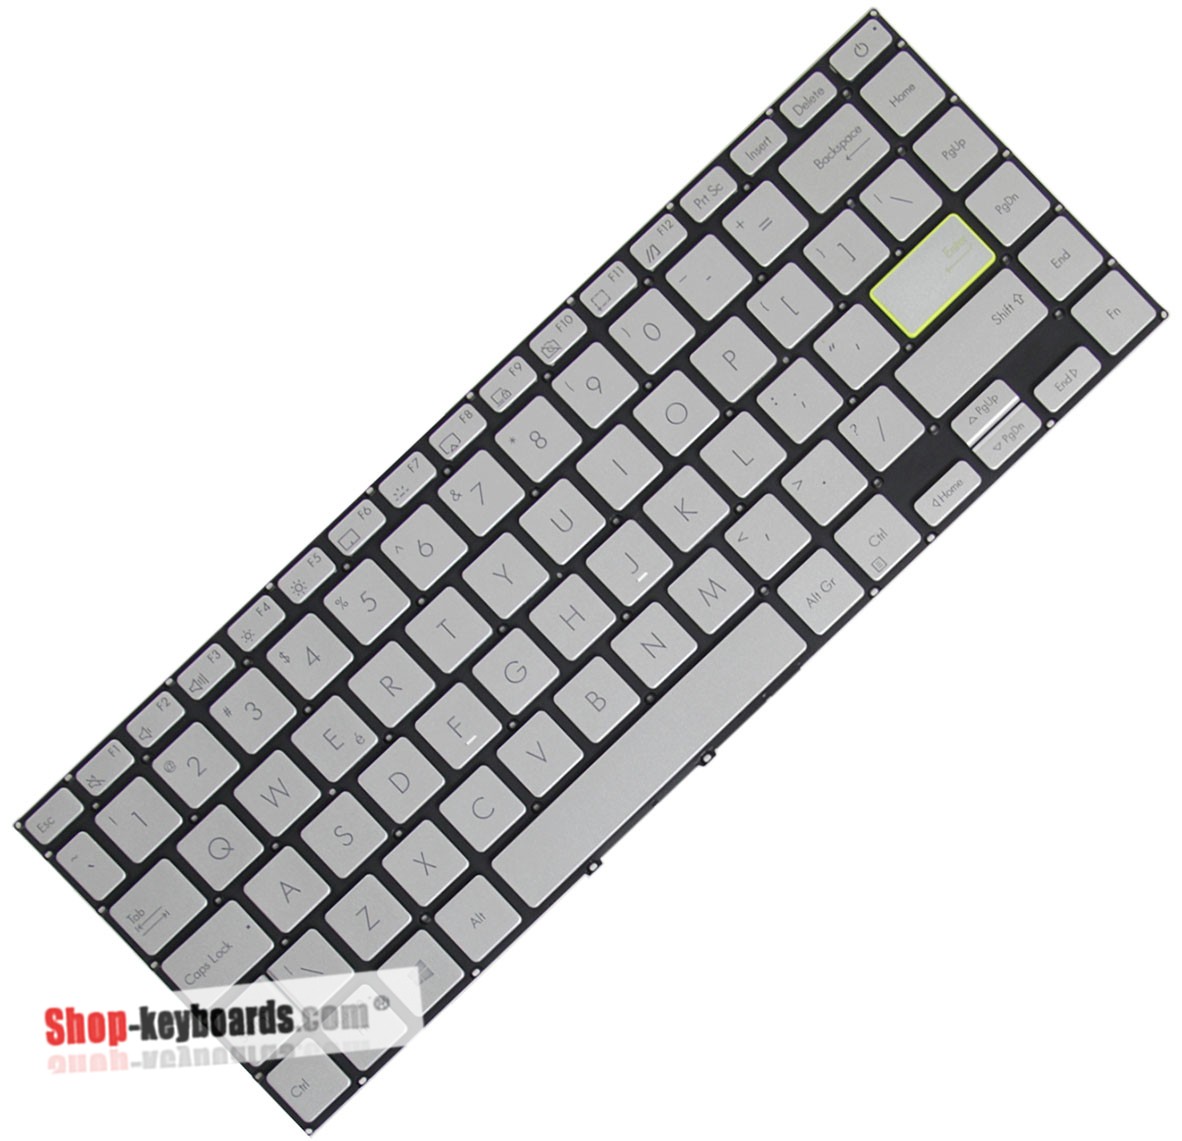 Asus AEXKSB01150  Keyboard replacement